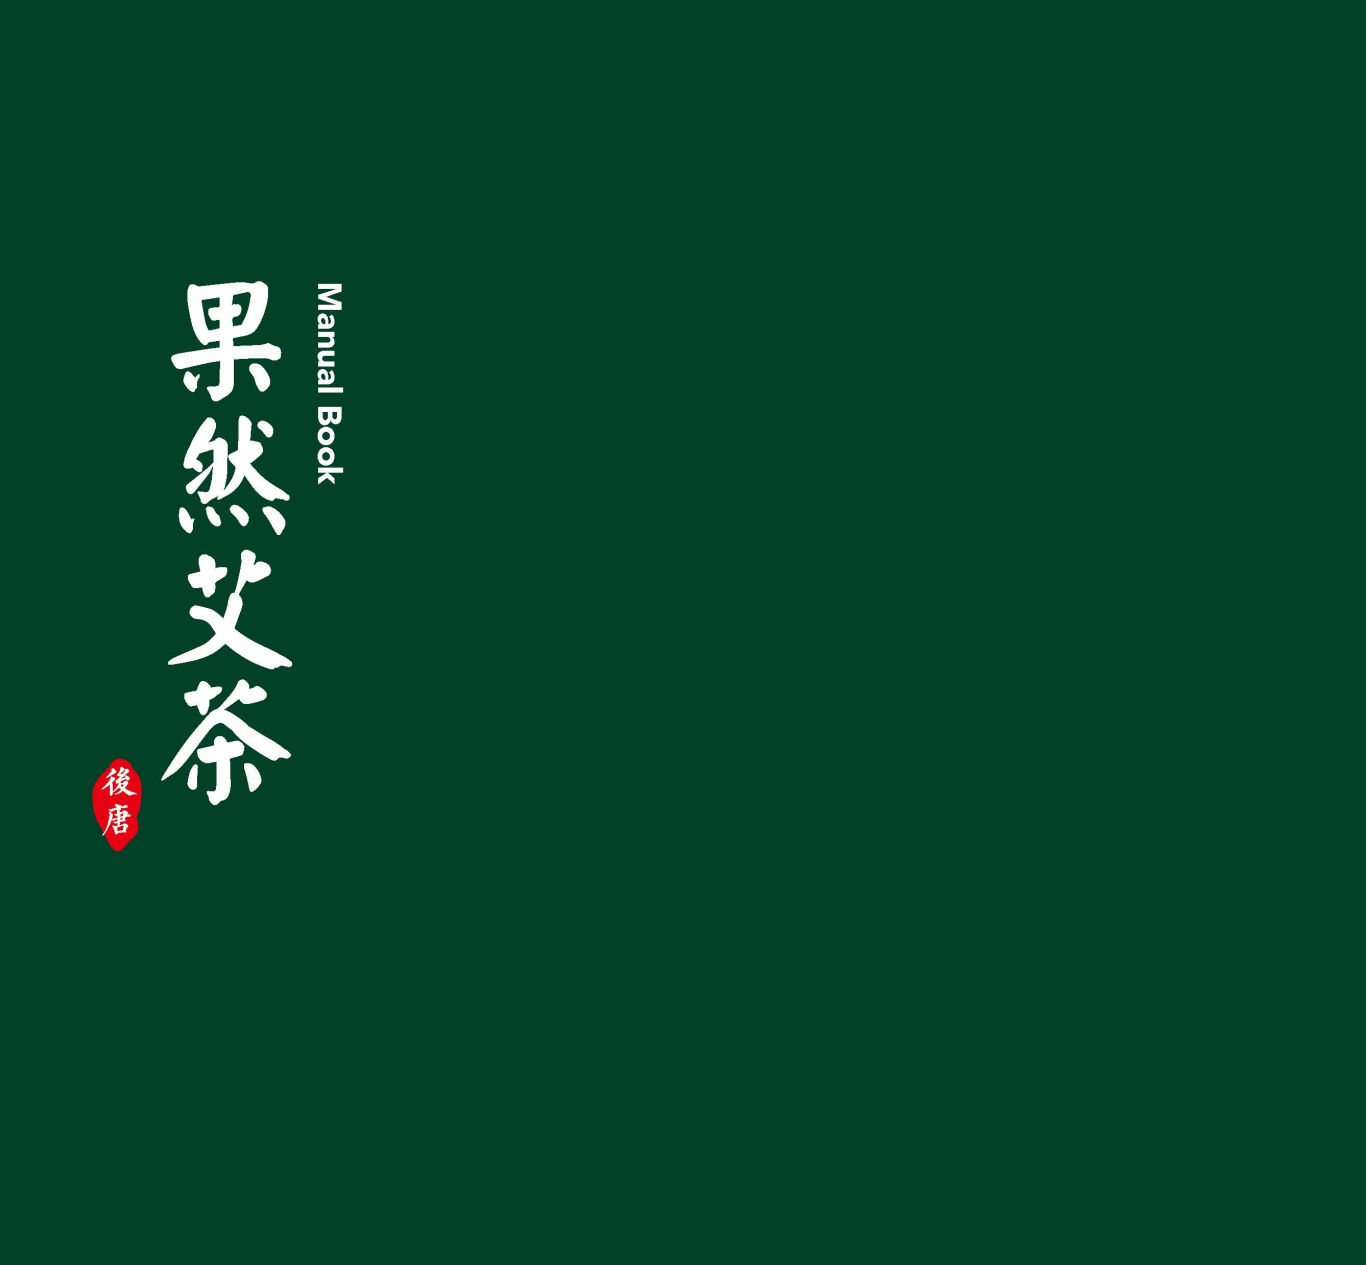 上海果然艾茶品牌設計圖0